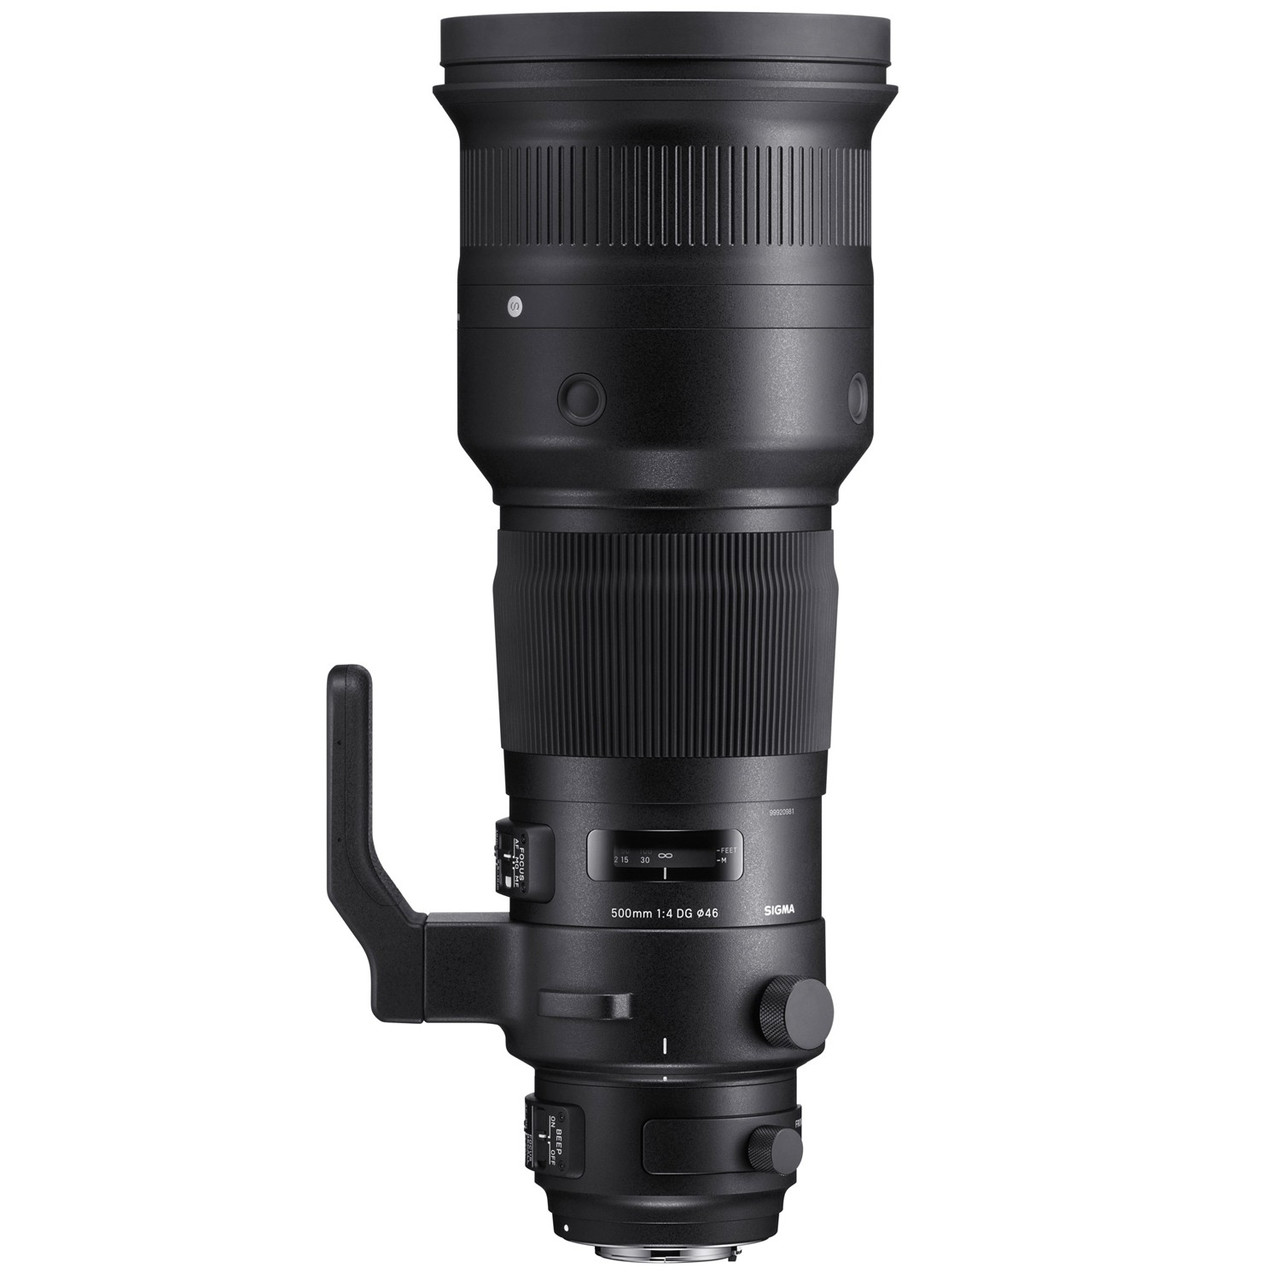 SIGMA APO 500mm 1:4.5 EX HSM カメラレンズ #1235 - カメラ、光学機器